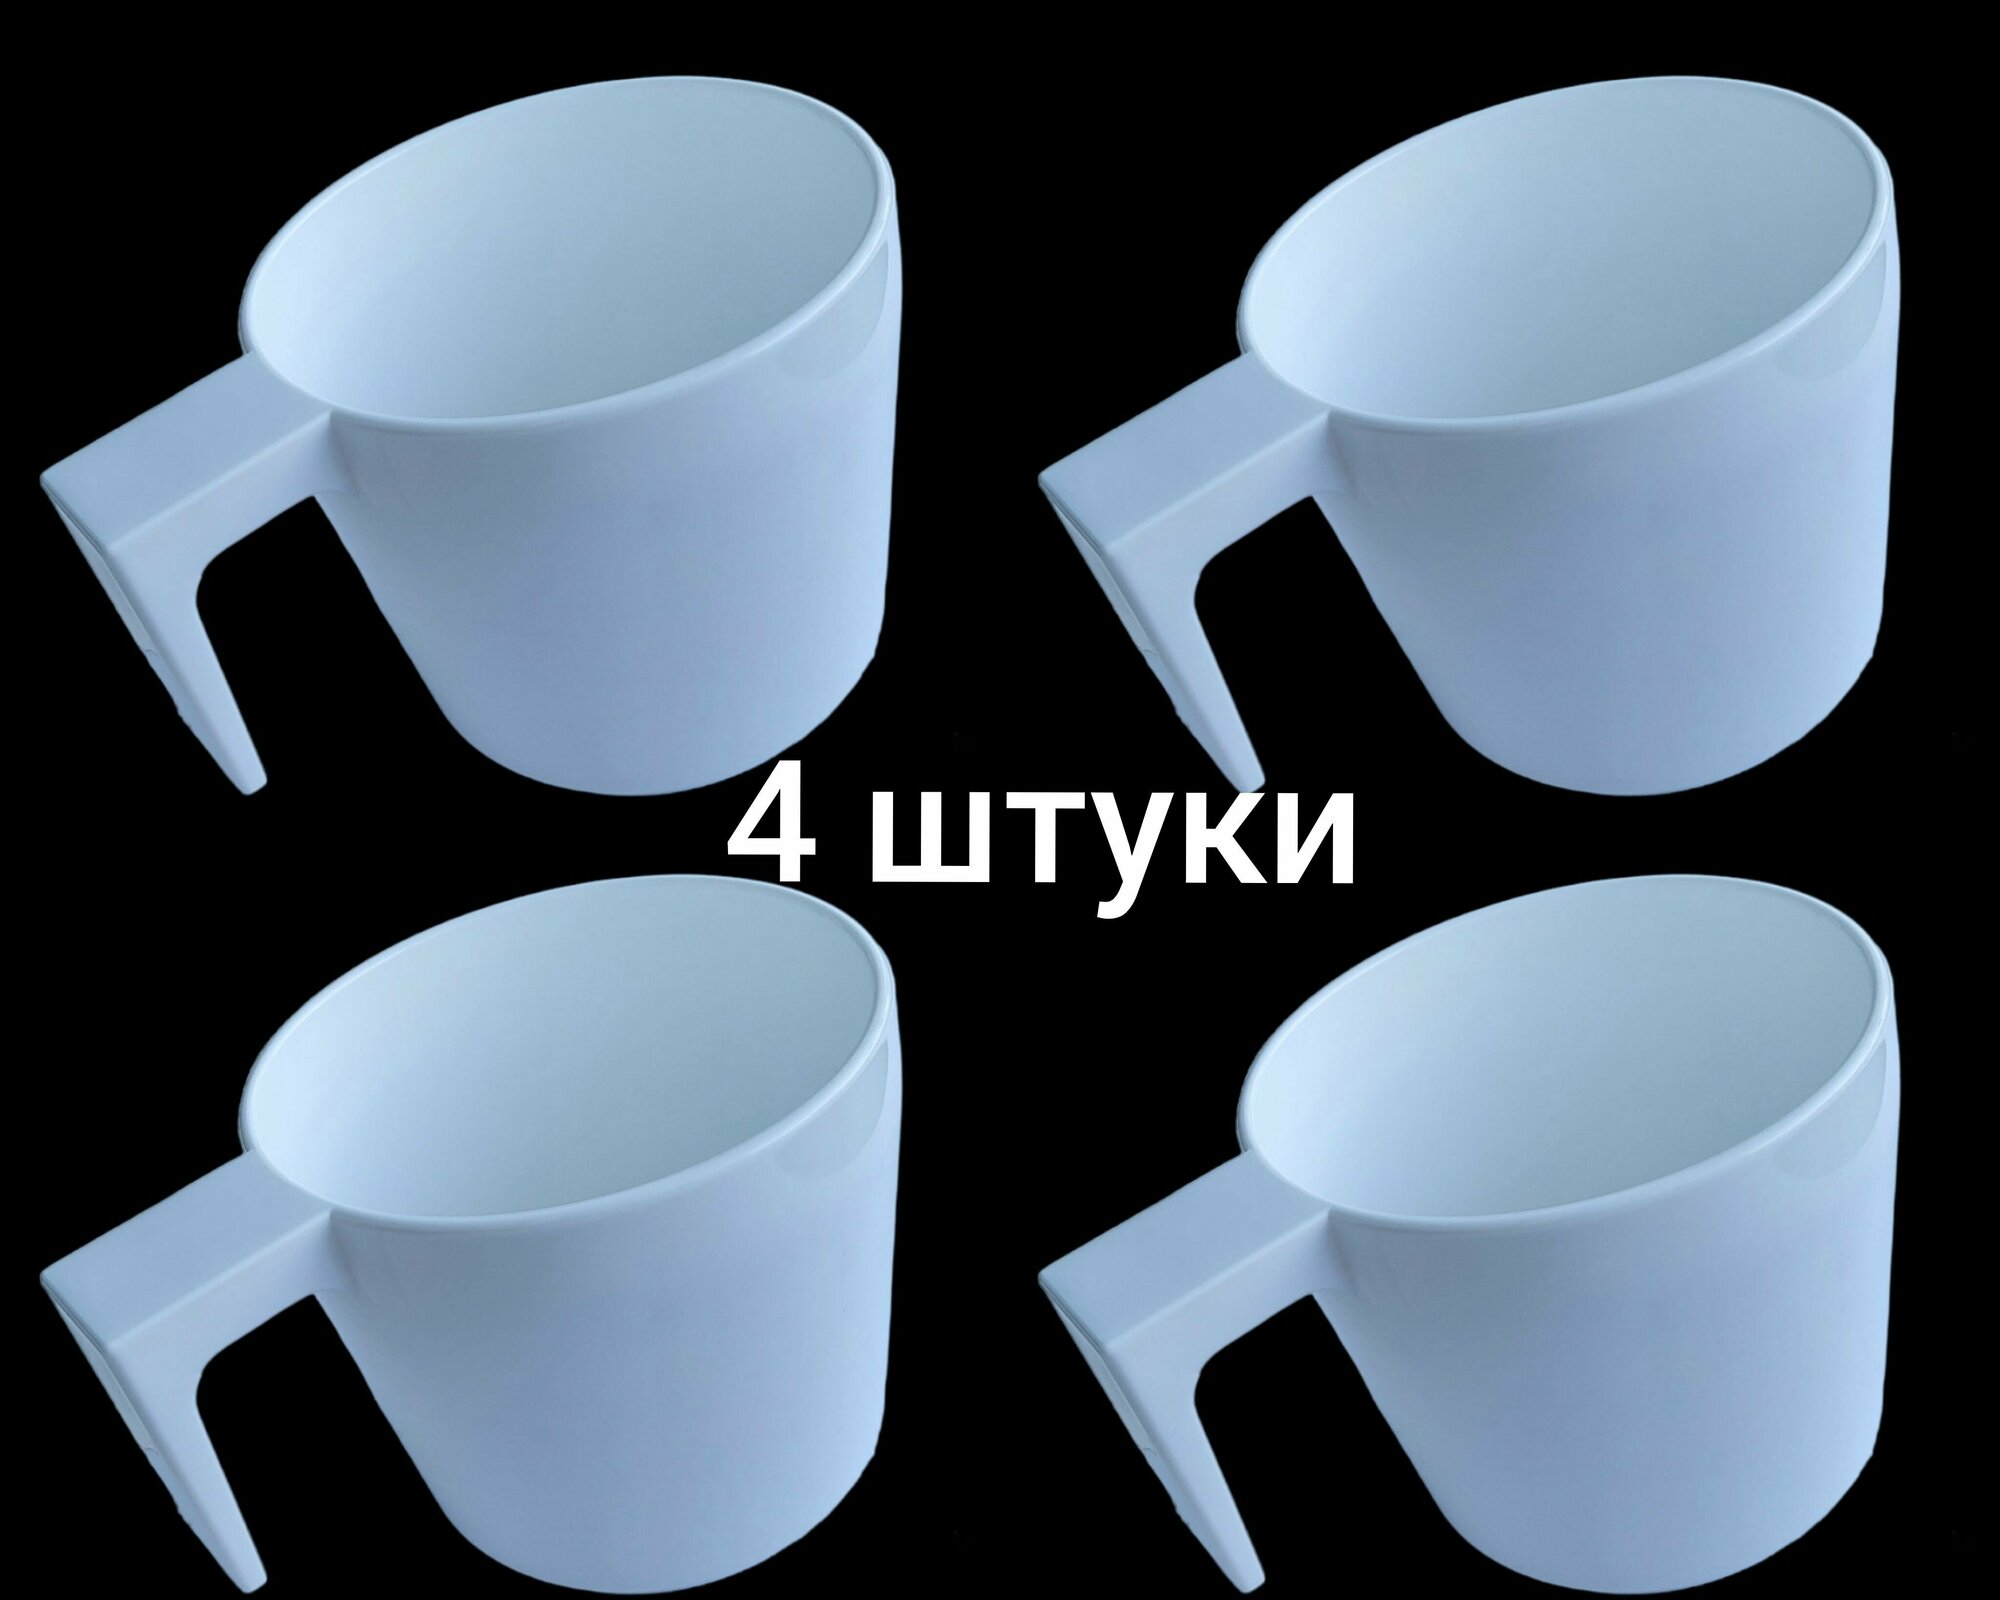 Чашка/кружка для многоразового использования из Поликарбоната (плотного пластика) 200мл. (белая, 4 штуки)